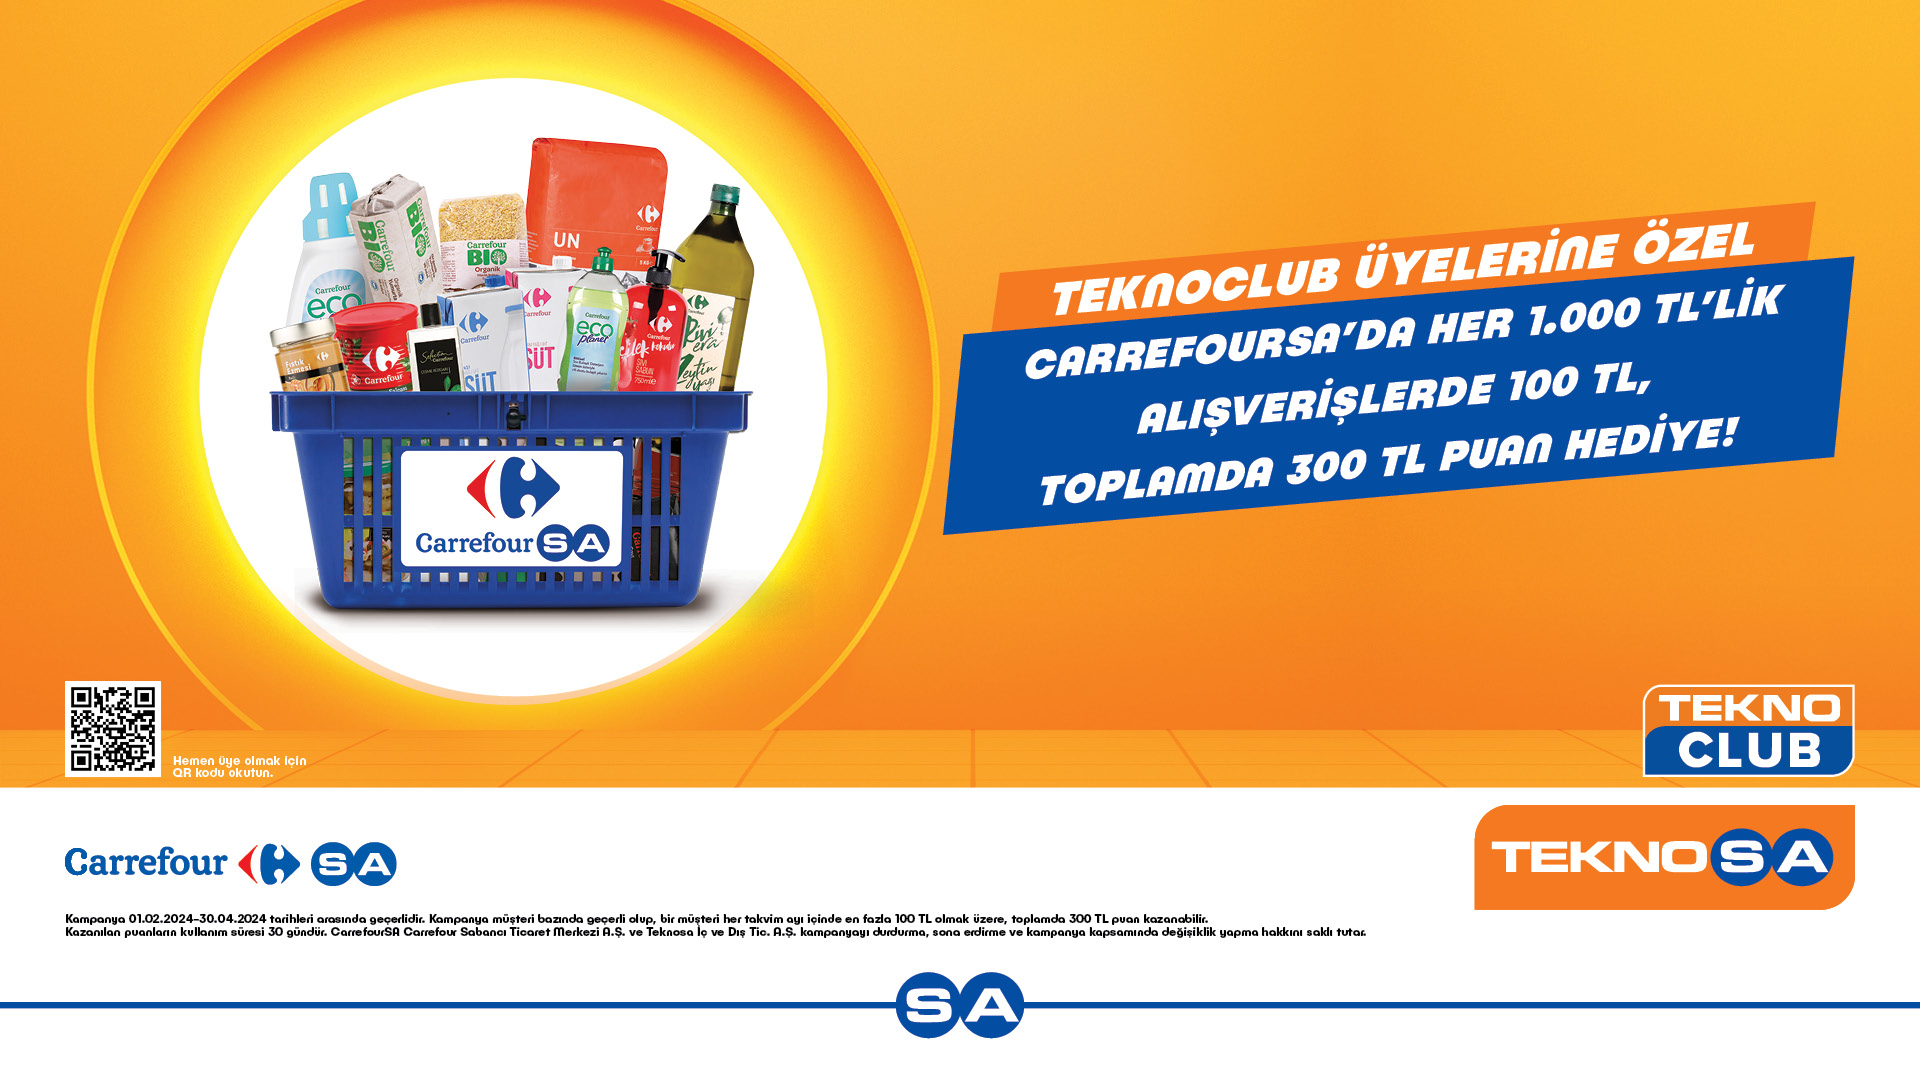 TeknoClub Üyelerine Özel CarrefourSA’da Her 1.000 TL’lik alışverişlerde 100 TL, Toplamda 300 TL Puan Hediye!